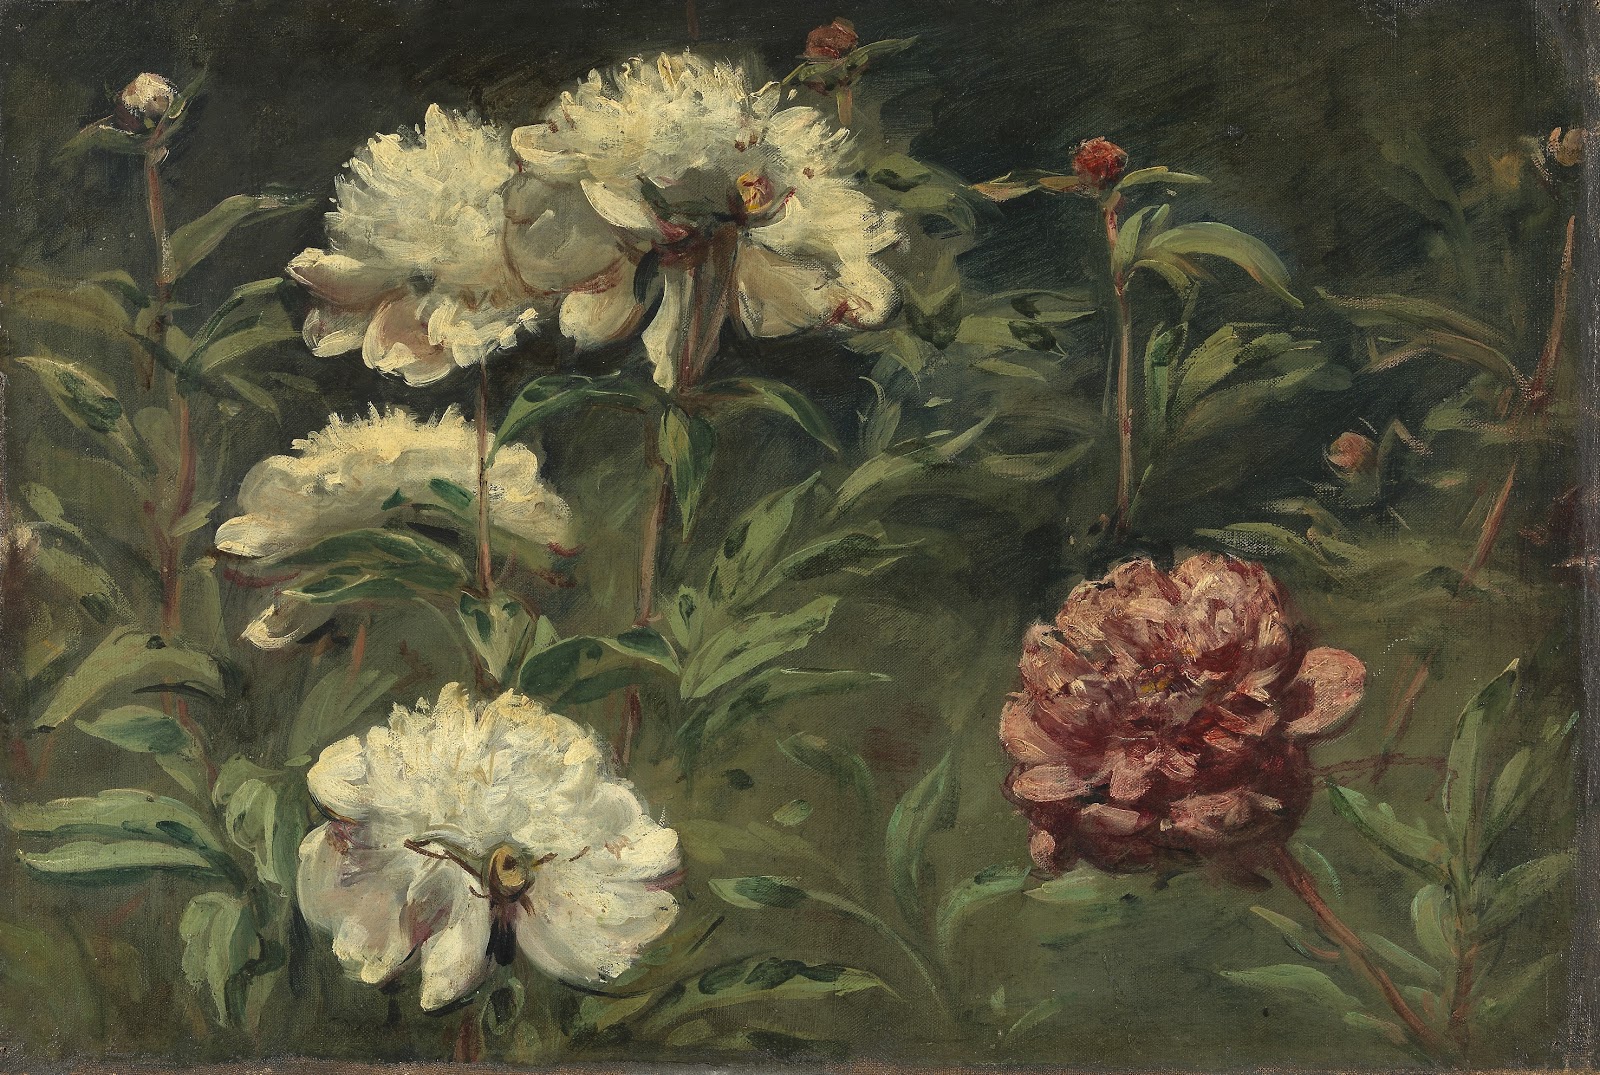 Eugene+Delacroix-1798-1863 (295).jpg